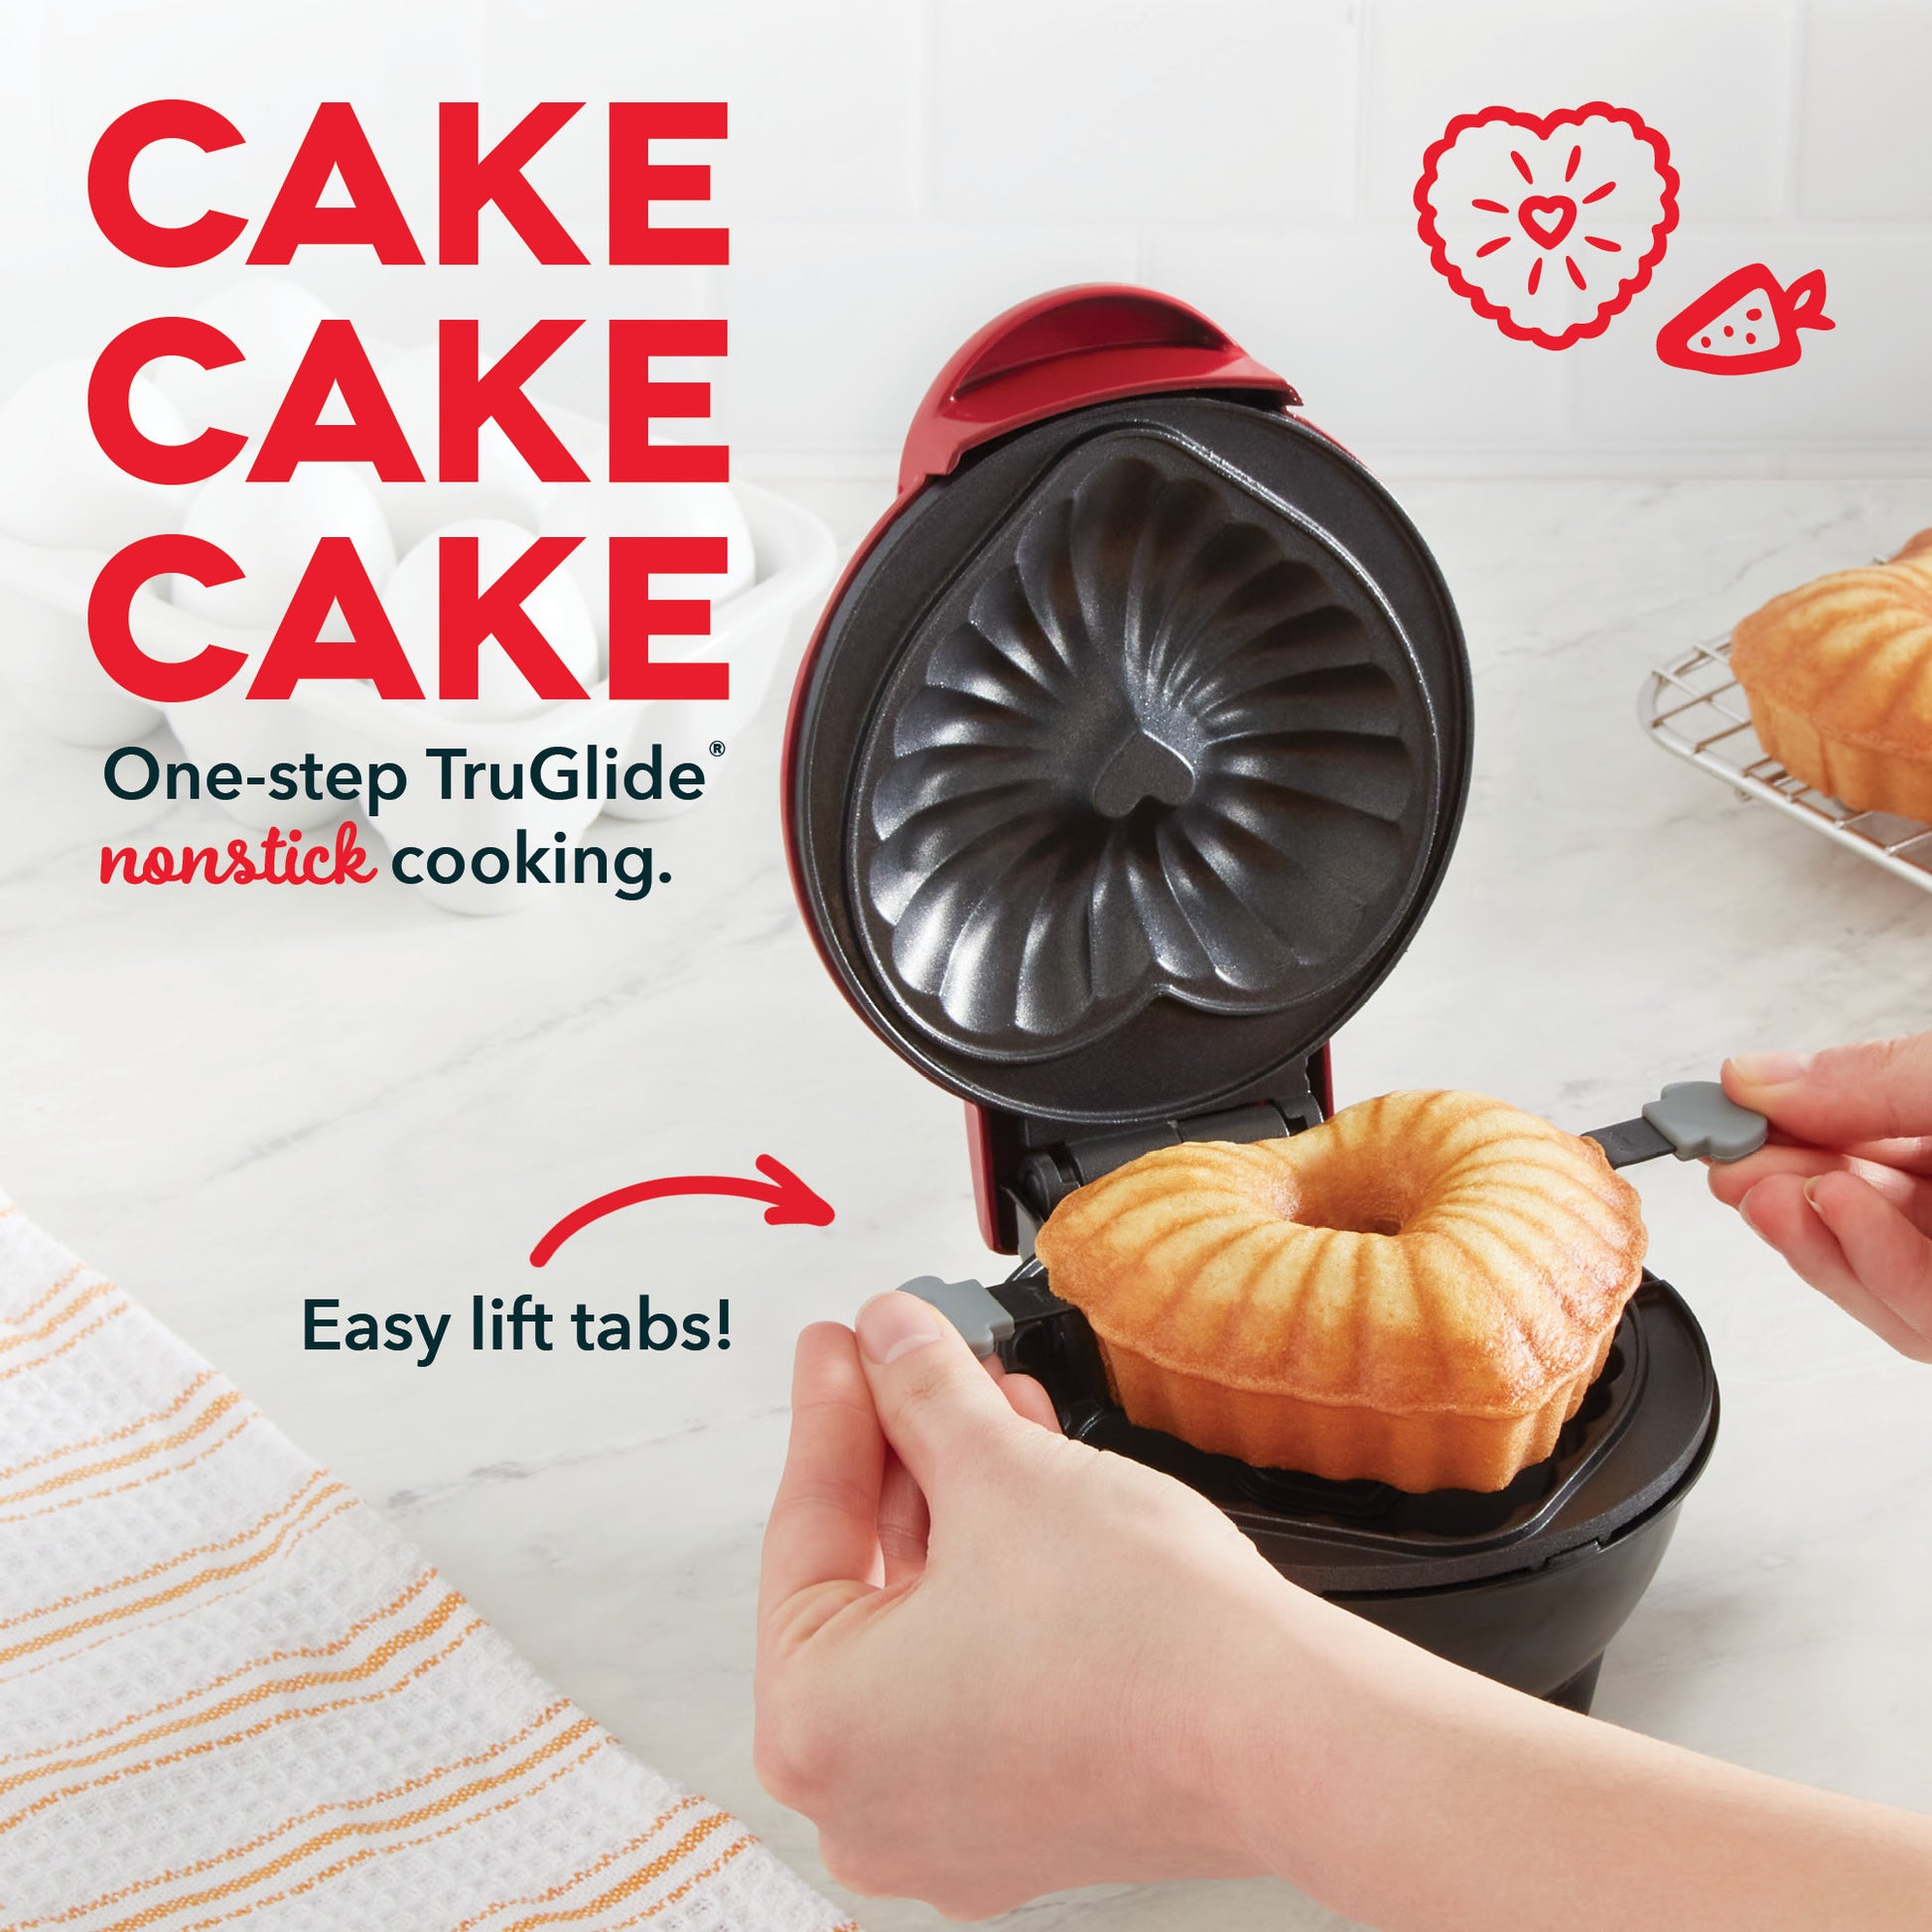  Mini Bundt® Cake Maker Aqua: Home & Kitchen